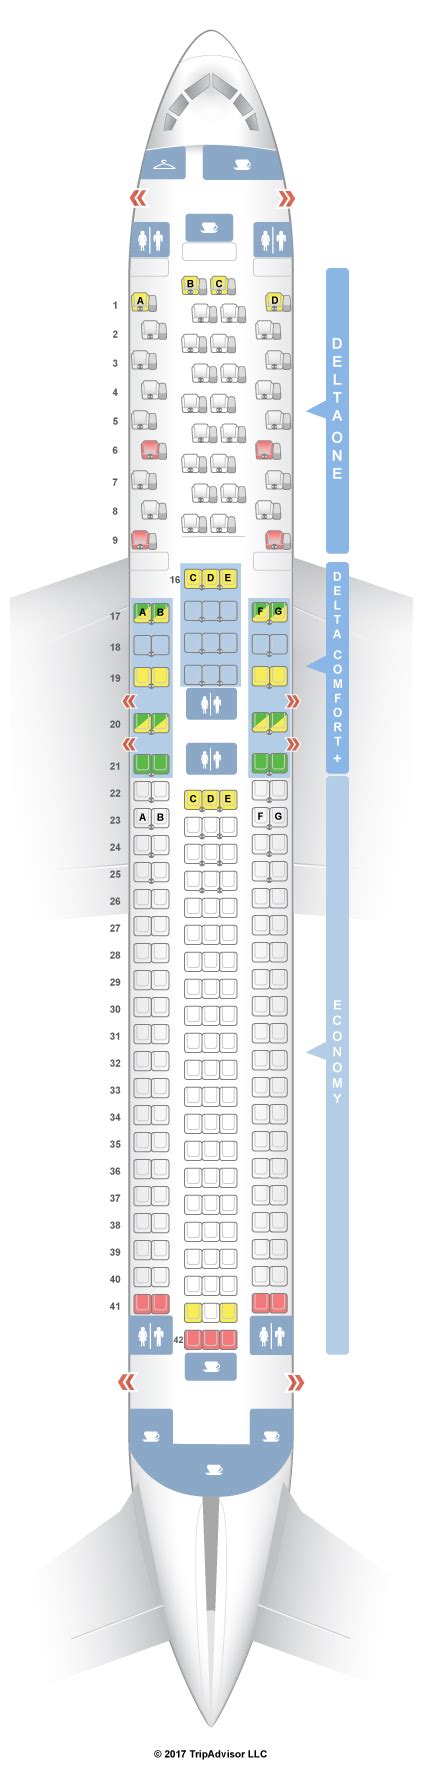 Delta boeing 767-300 seatguru. Things To Know About Delta boeing 767-300 seatguru. 